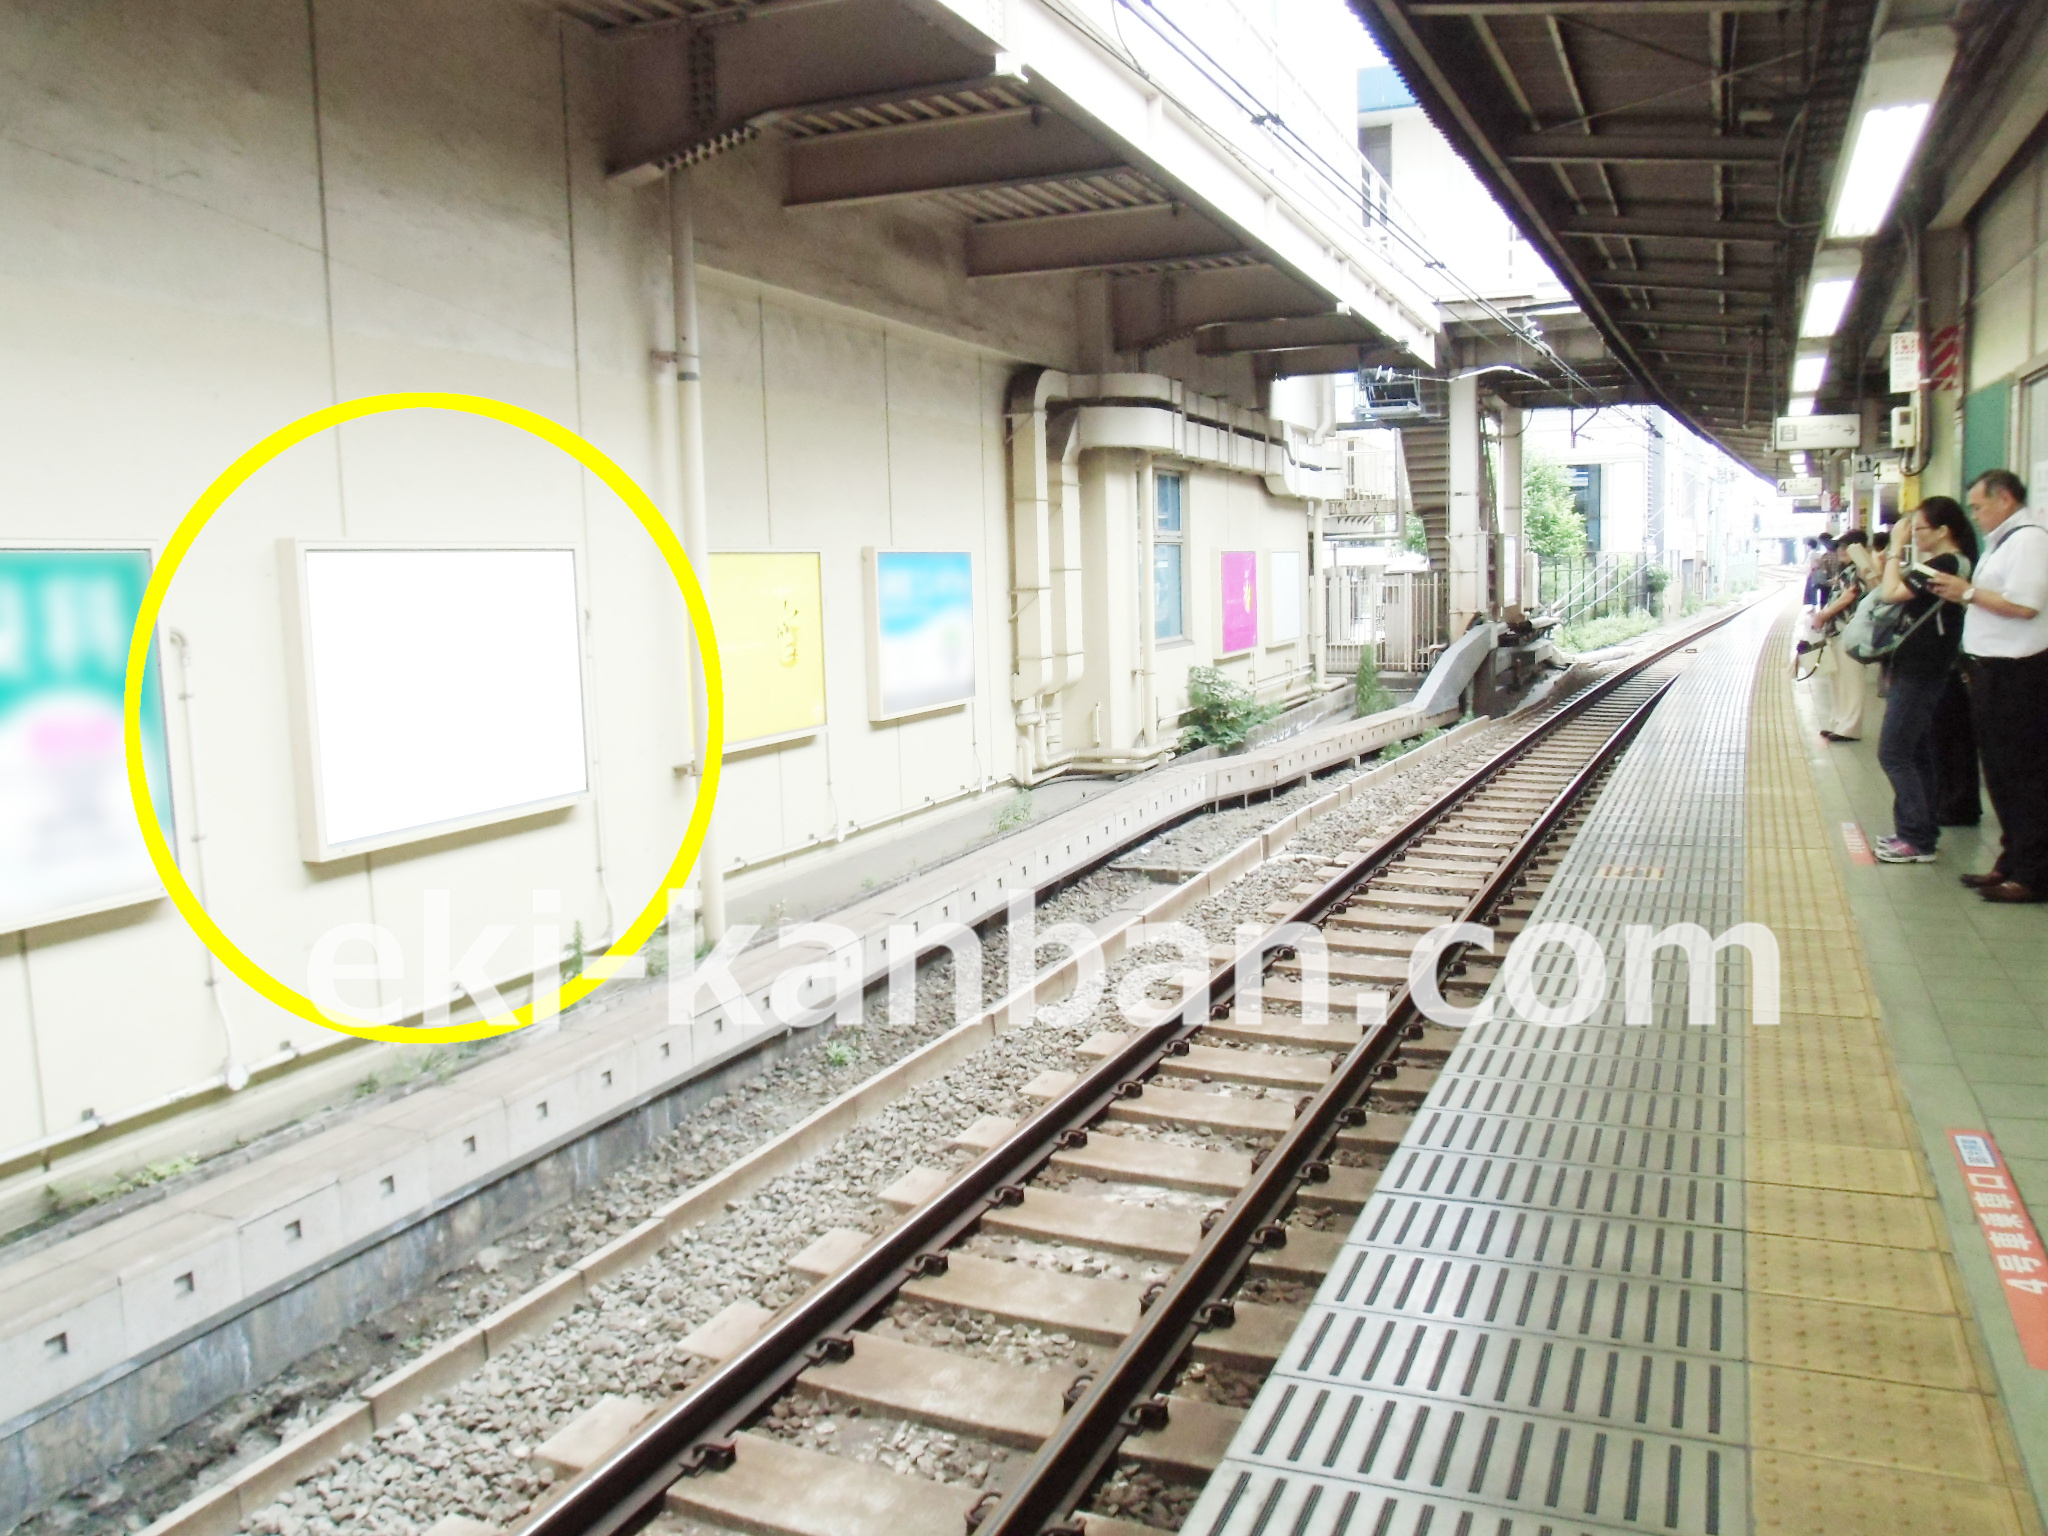 JR 荻窪駅の広告／JR 中央線快速 上り線路前 駅看板のご紹介です。